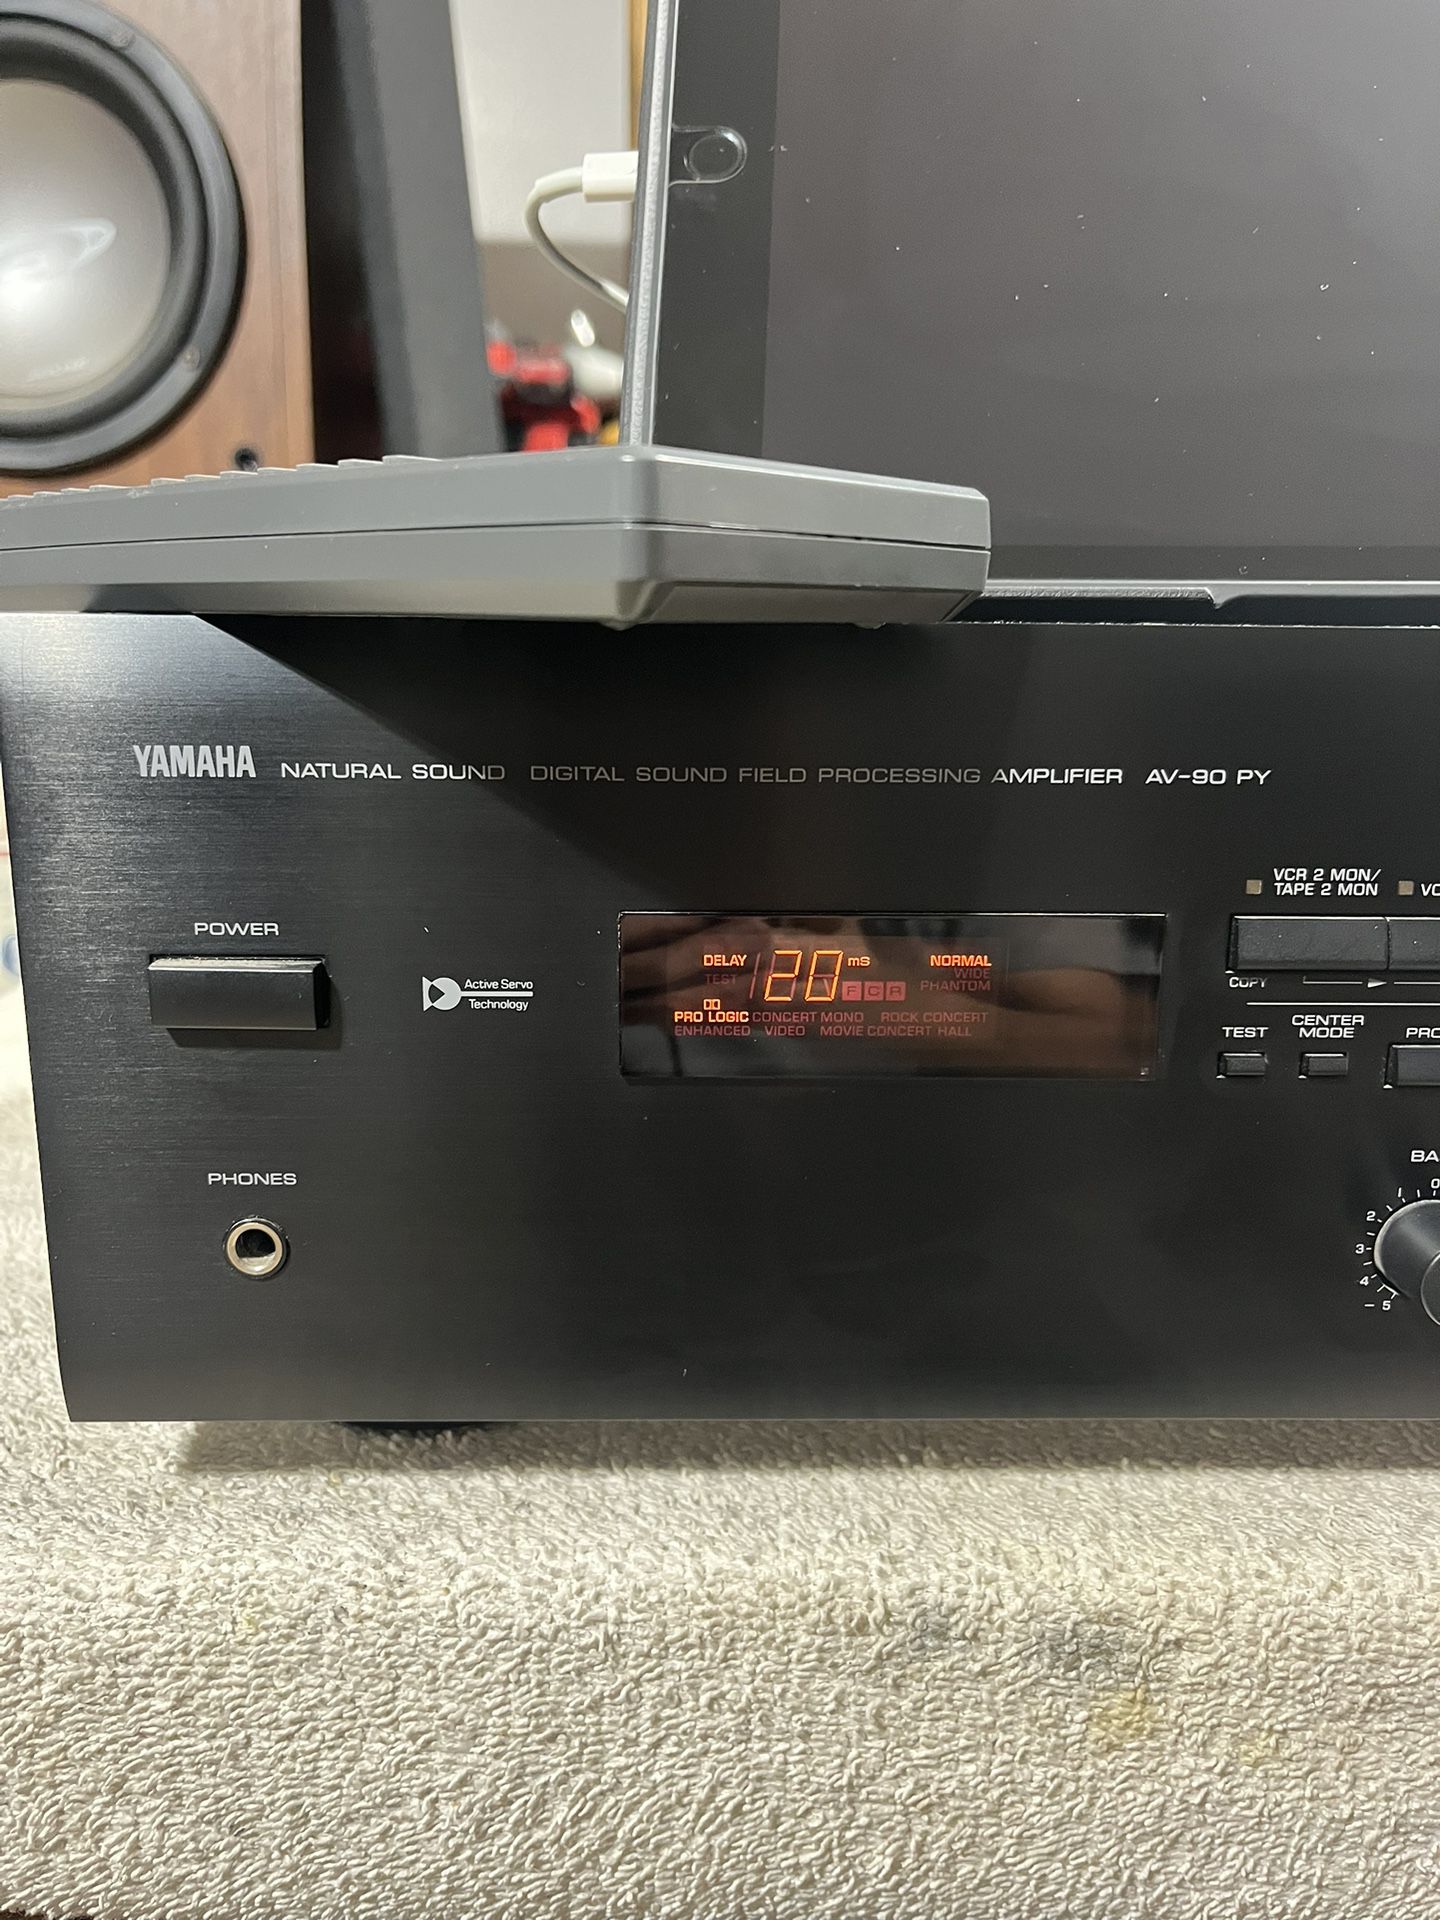 Yamaha Av-90py Digital Sound Field Processing Amplifier